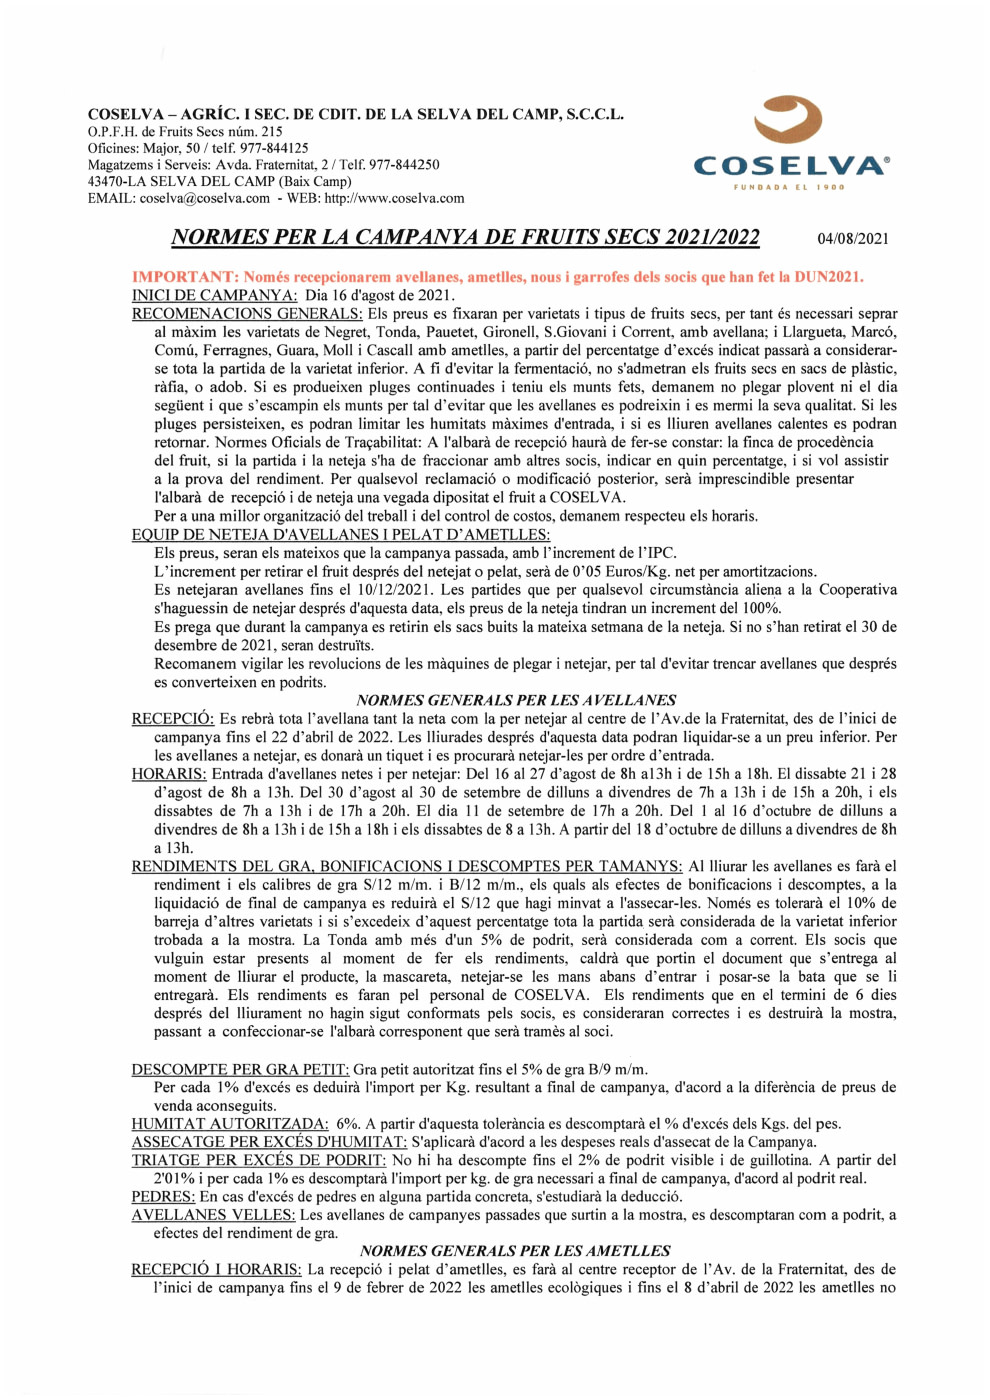 NORMES DE CAMPANYA DE FRUITS SECS 2021/2022